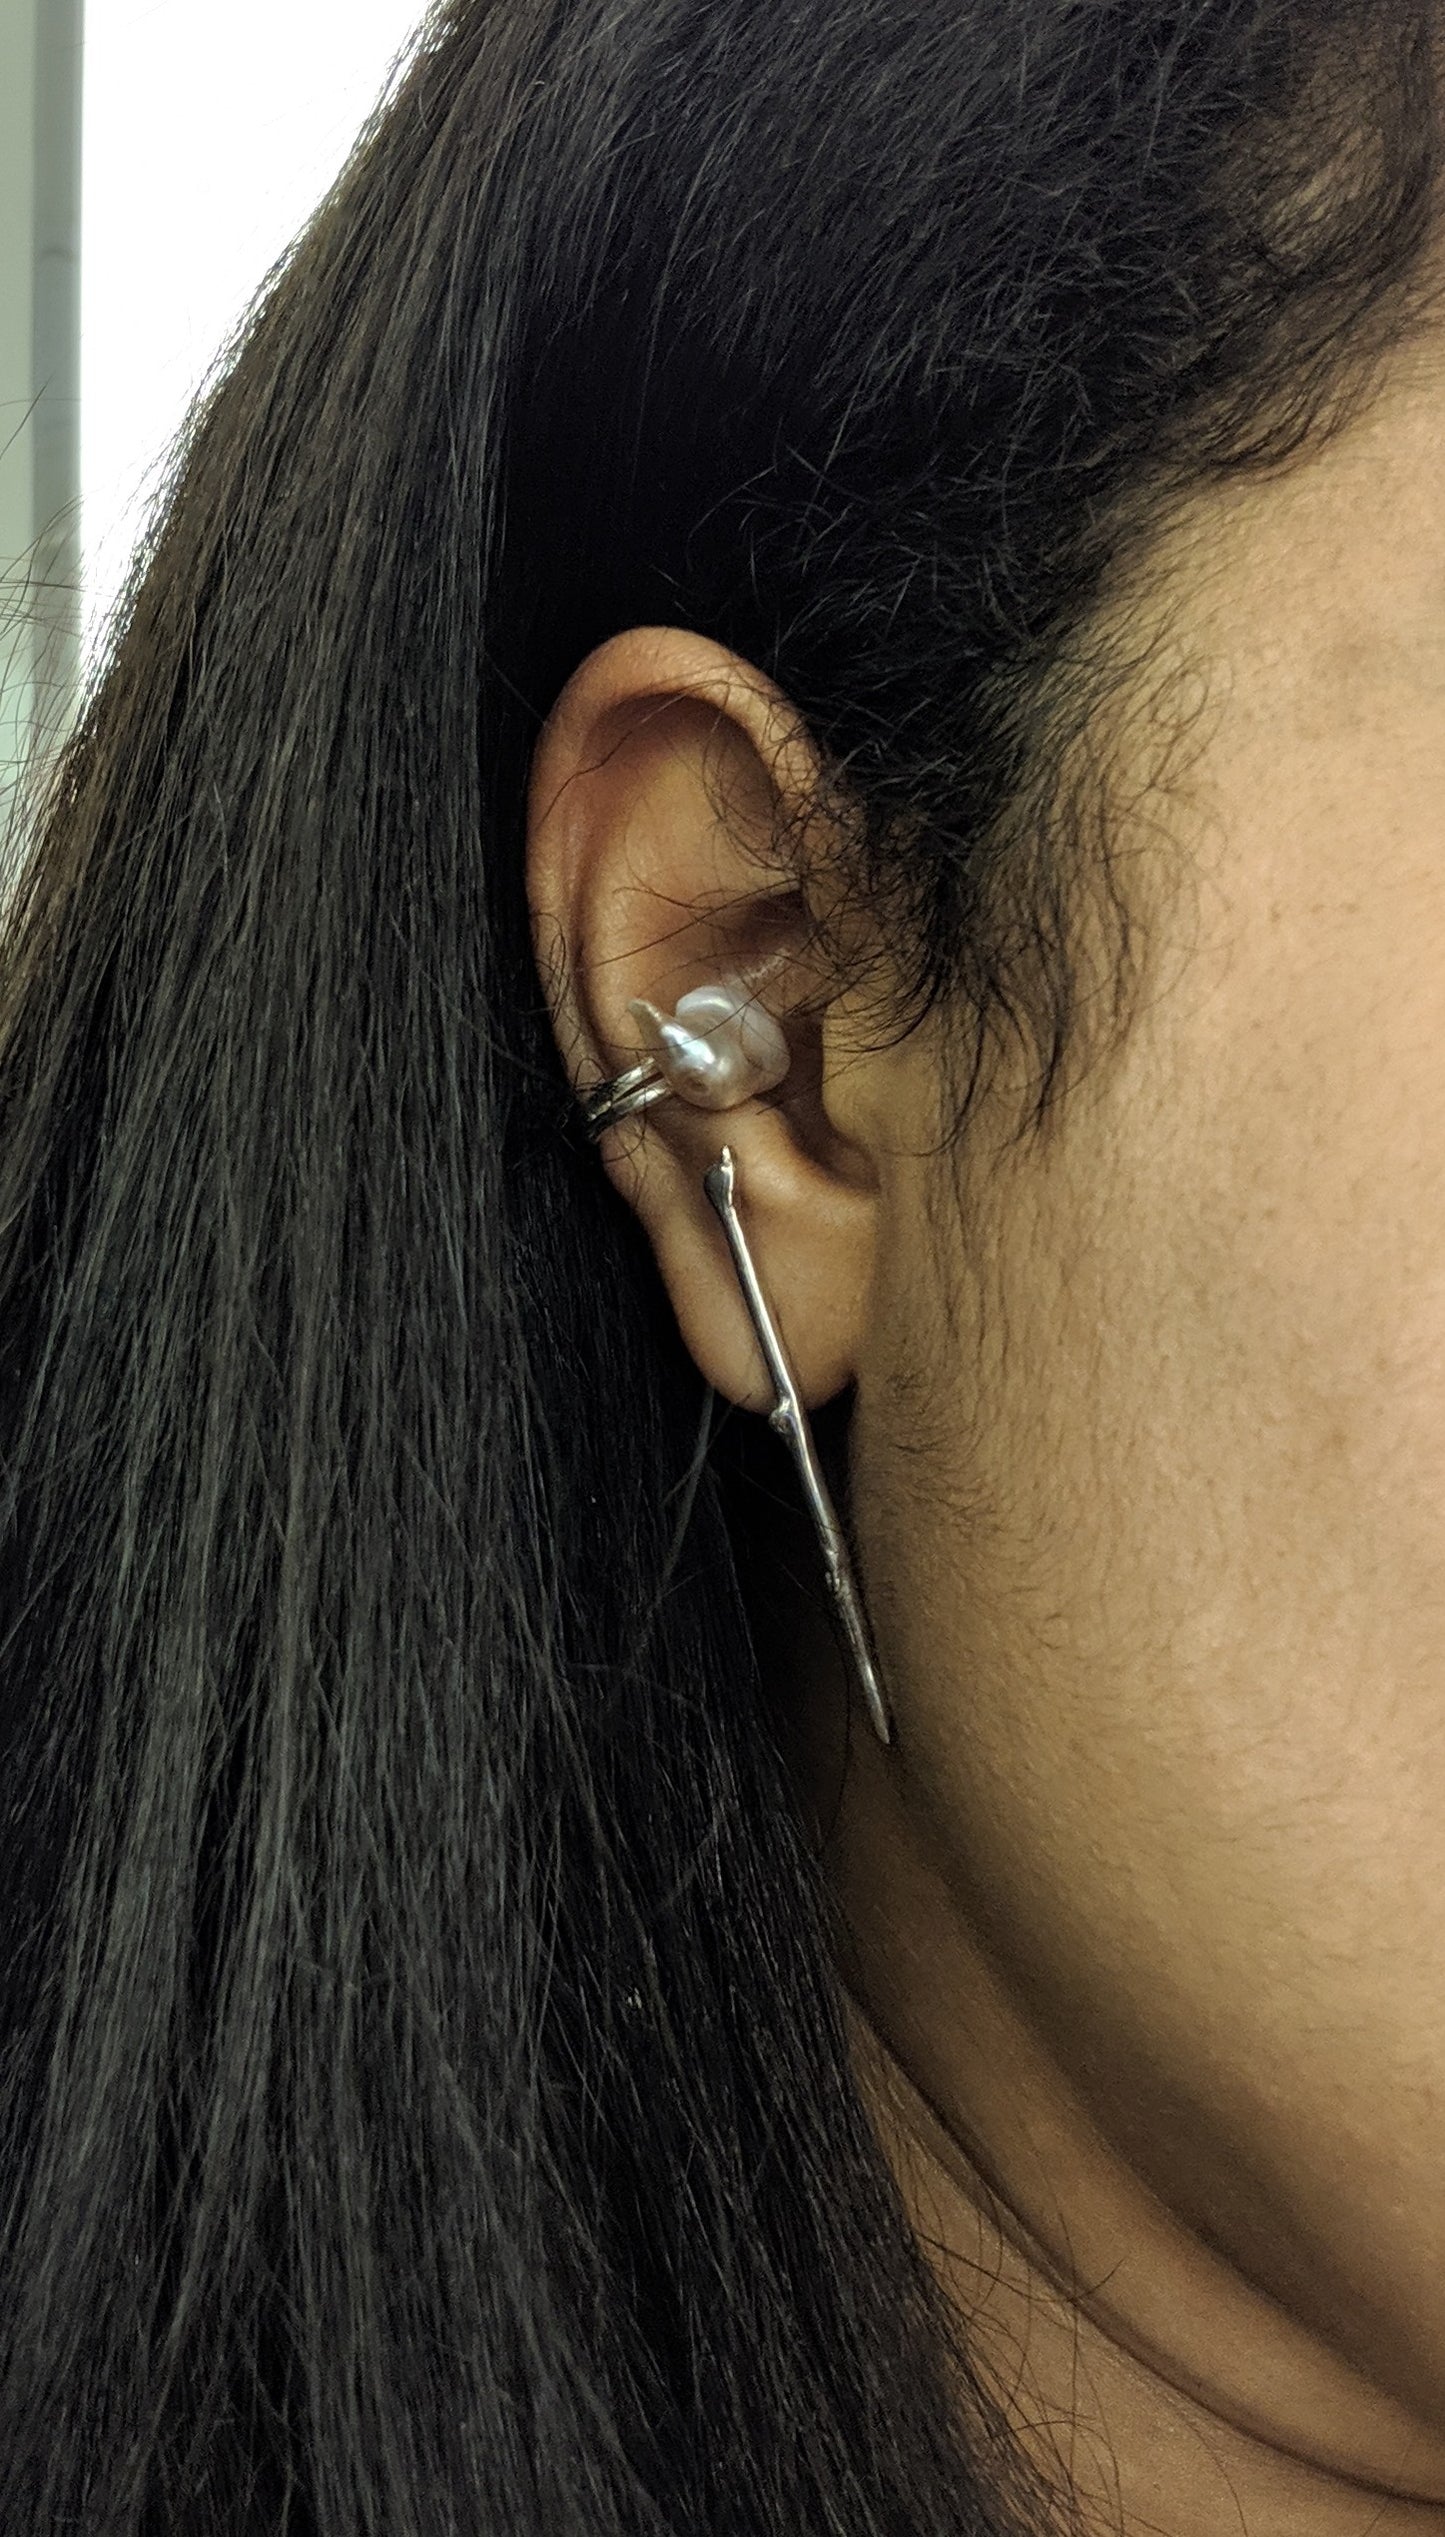 The Single Branch Earring in Silver